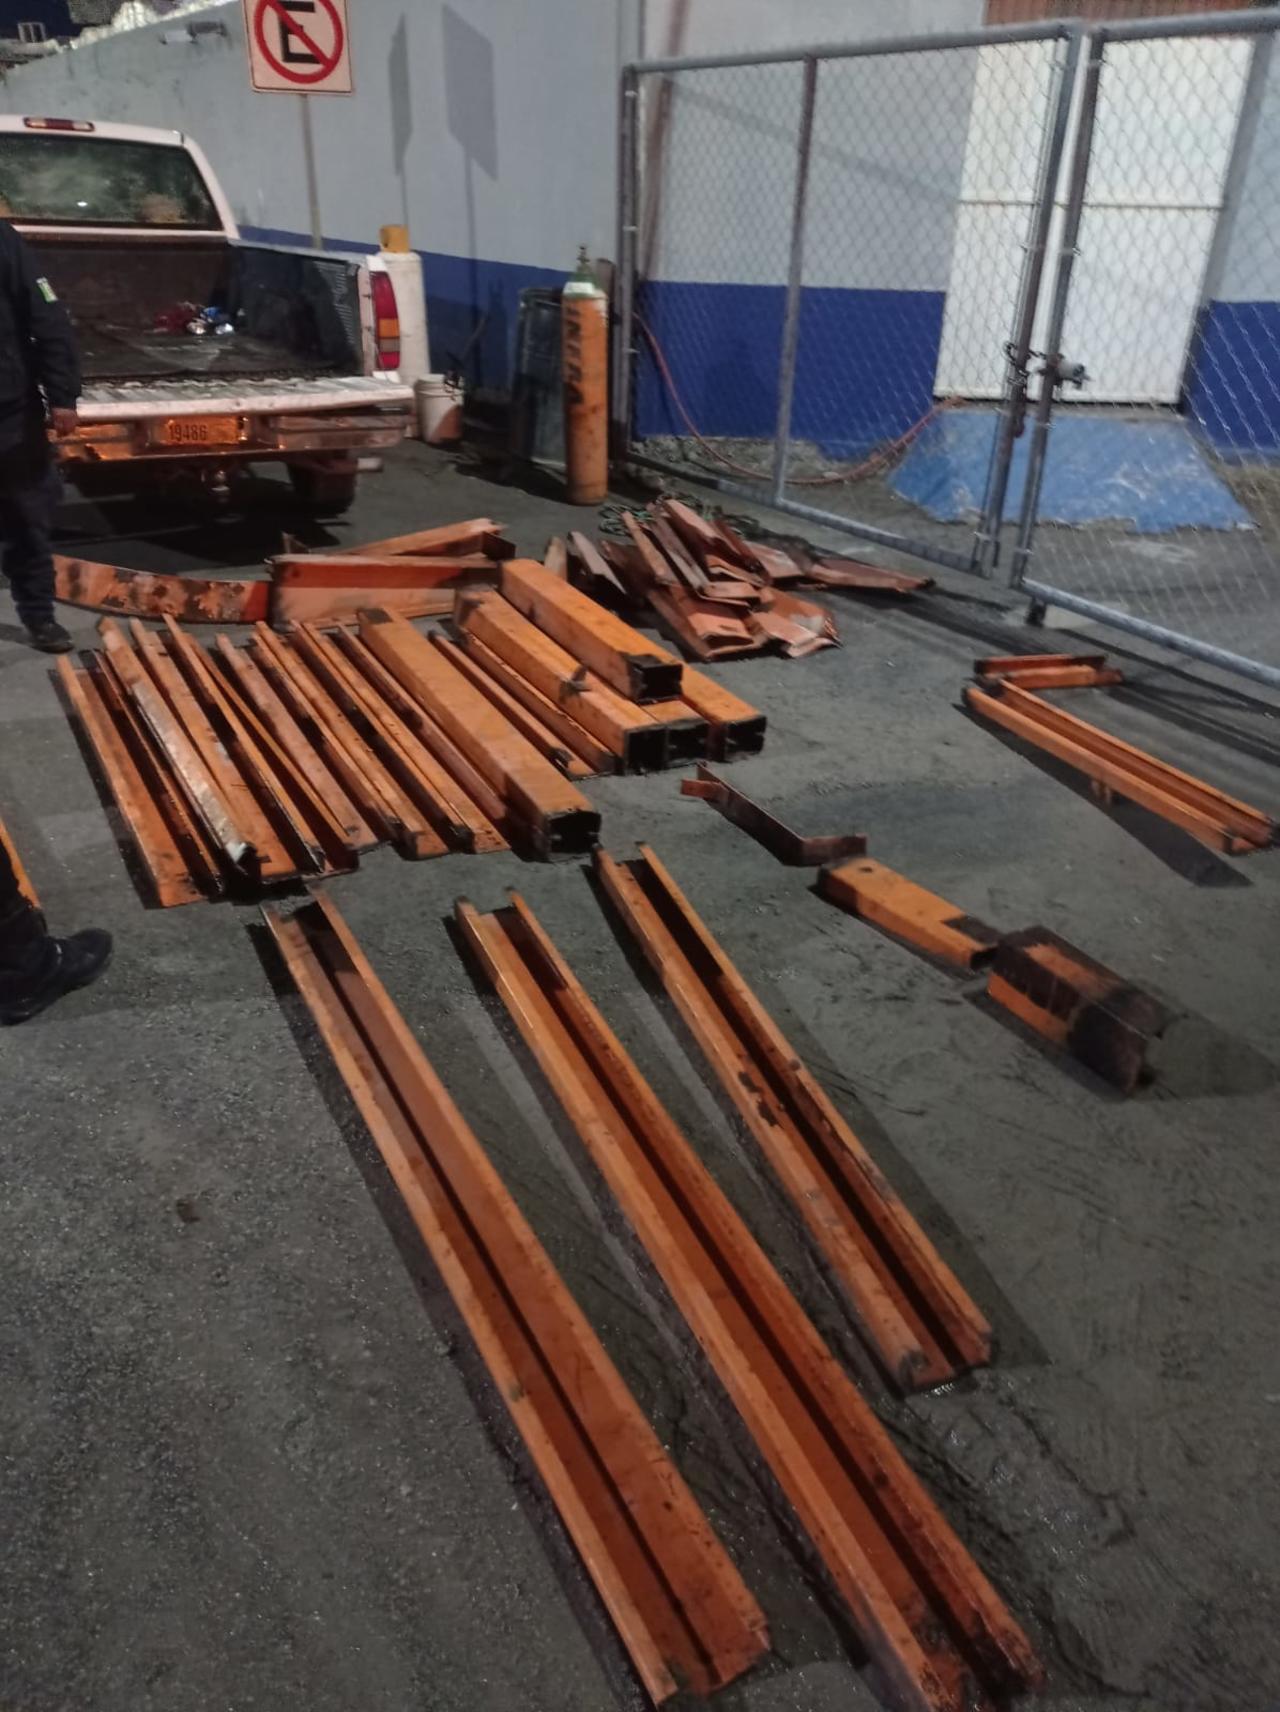 Policía de Monclova captura a 4 personas con una tonelada de acero